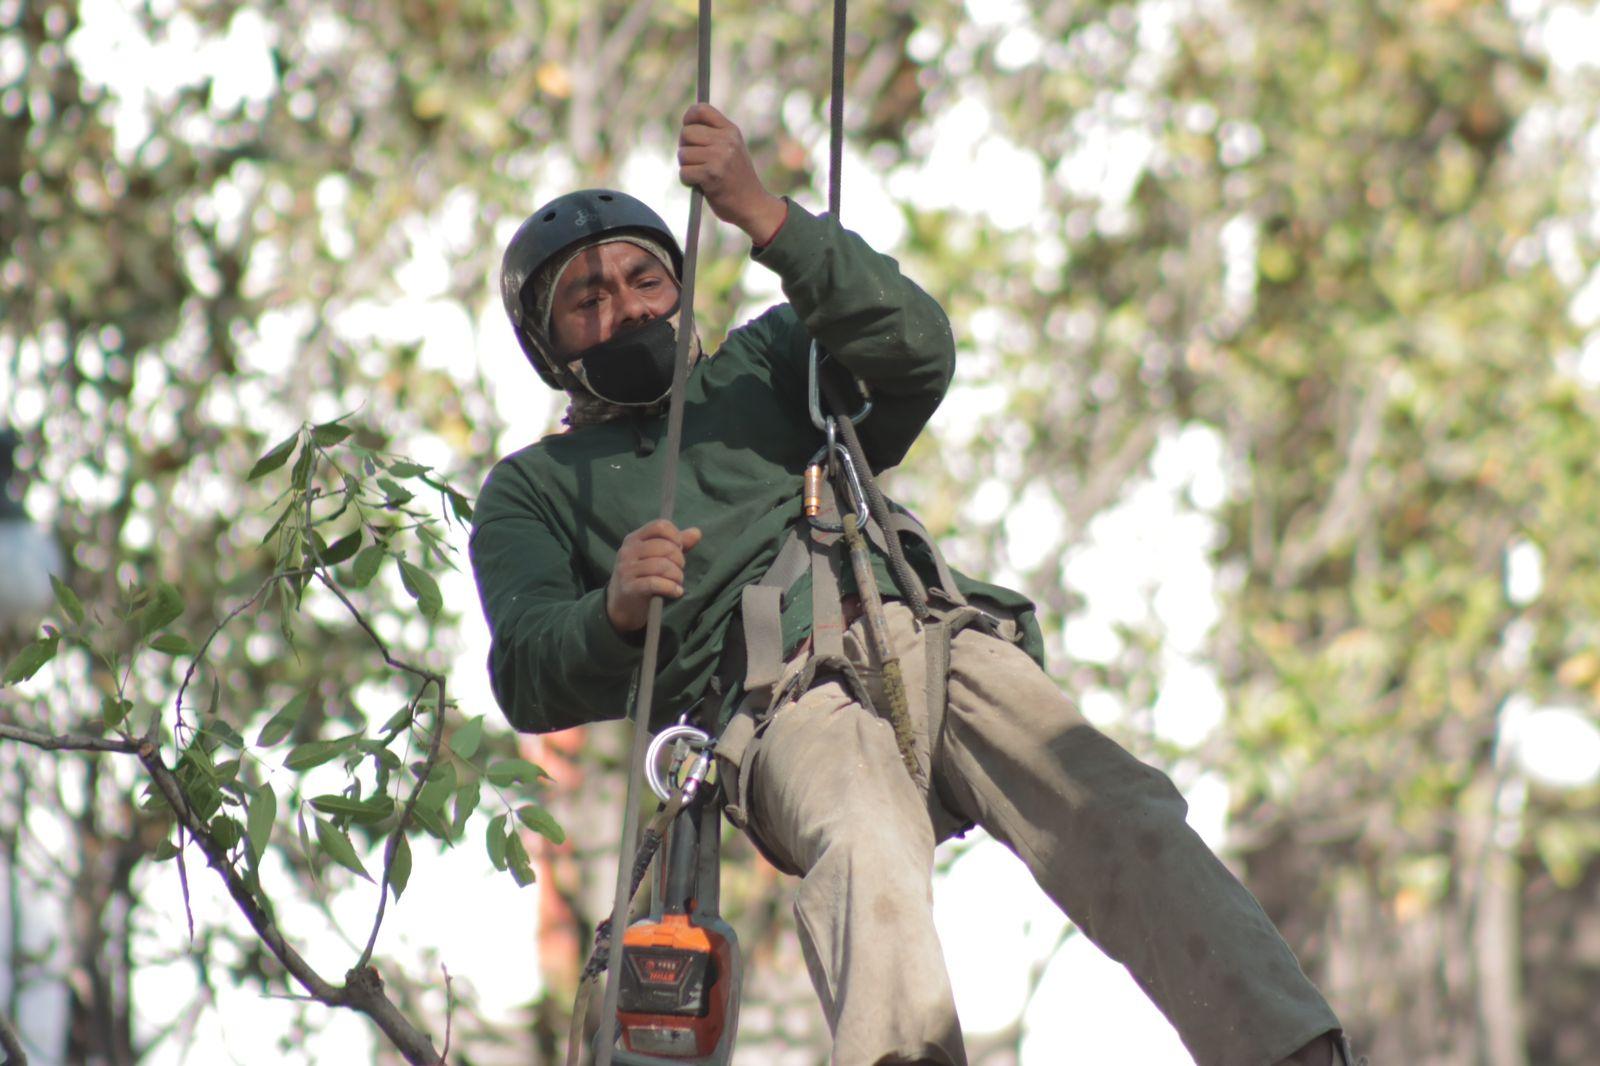 "Arborista", el oficio de podar los árboles desde las alturas